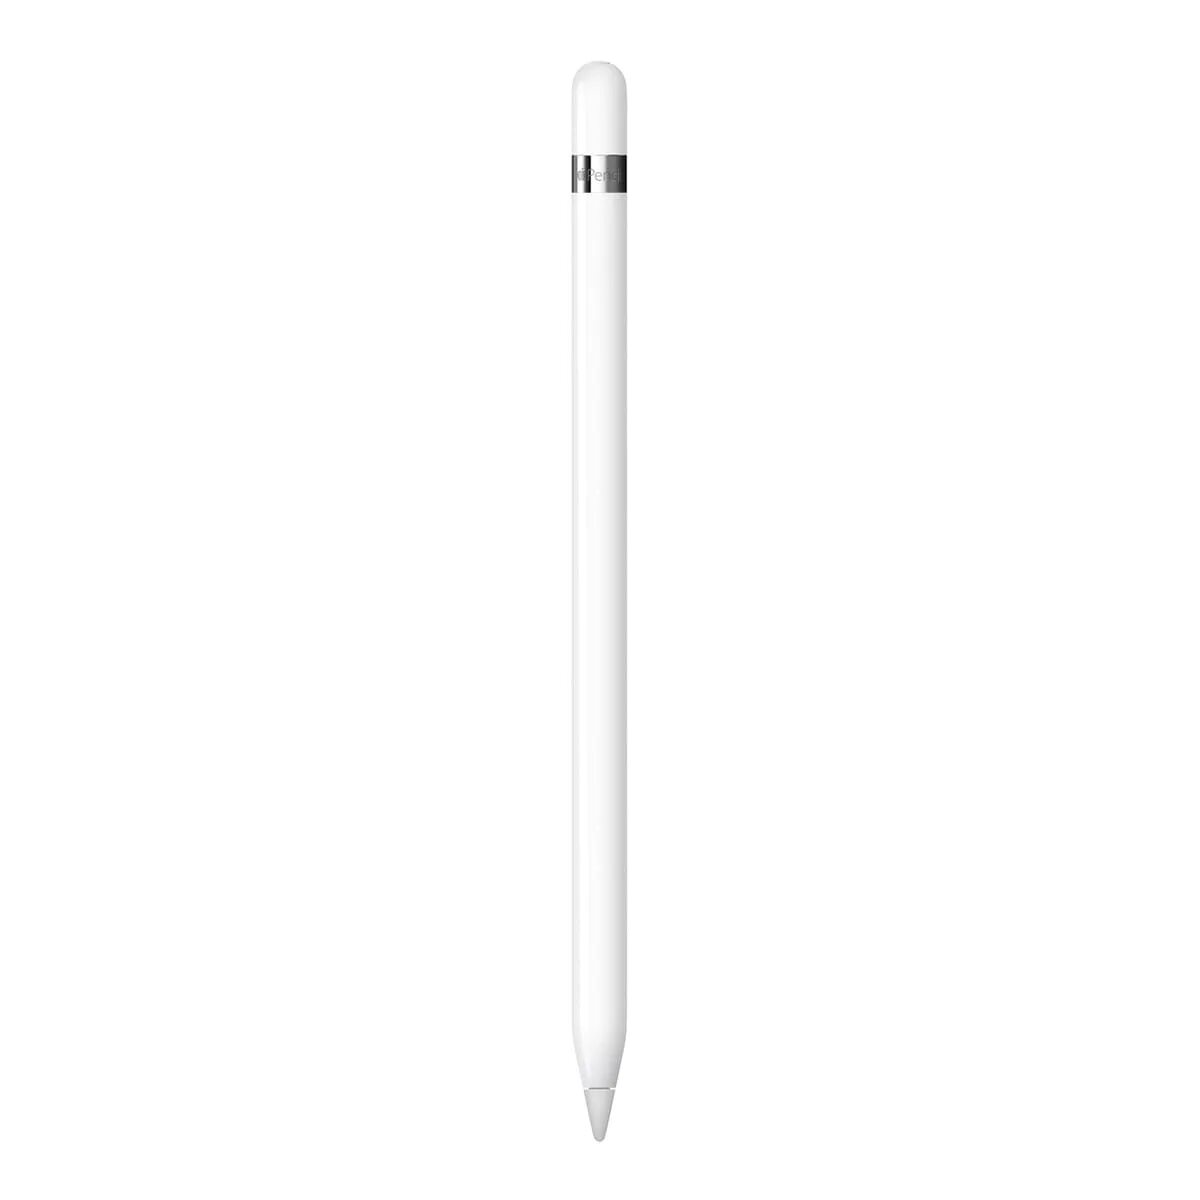 Стилус apple. Apple стилус Apple mk0c2zm/a. Стилус Эппл 1 поколения. Стилус Hama 14215. Mk0c2zm/a Apple Pencil.